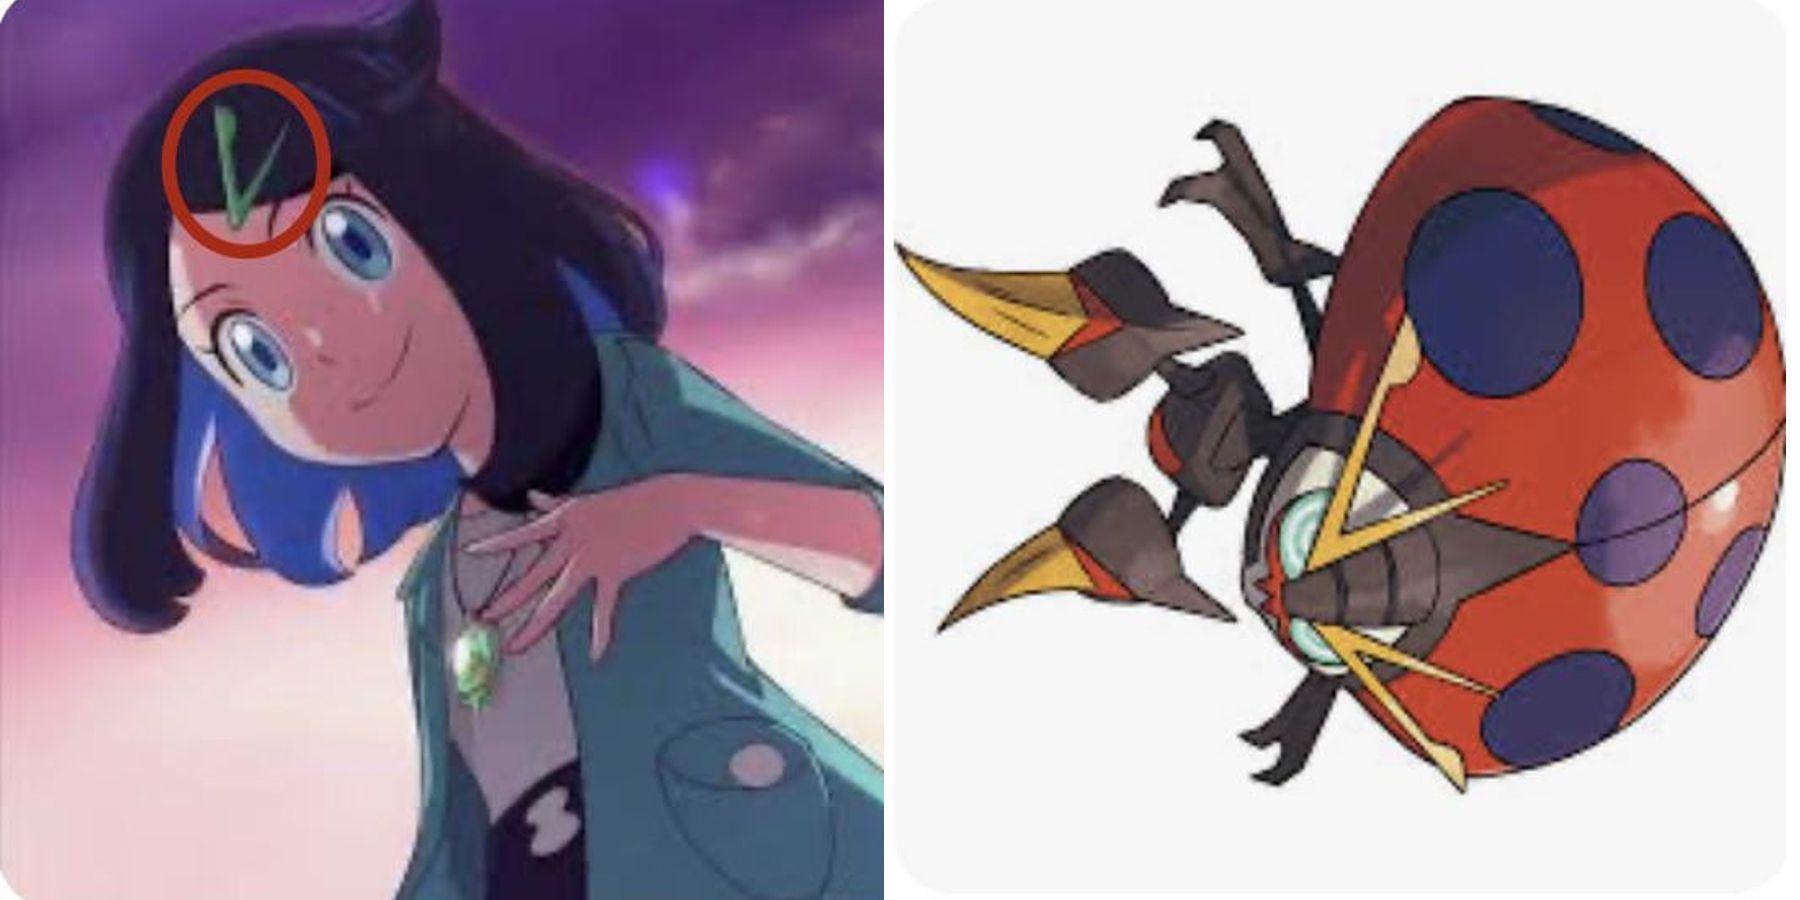 Fã de Pokemon aponta estranha semelhança entre novo protagonista de anime e Orbeetle